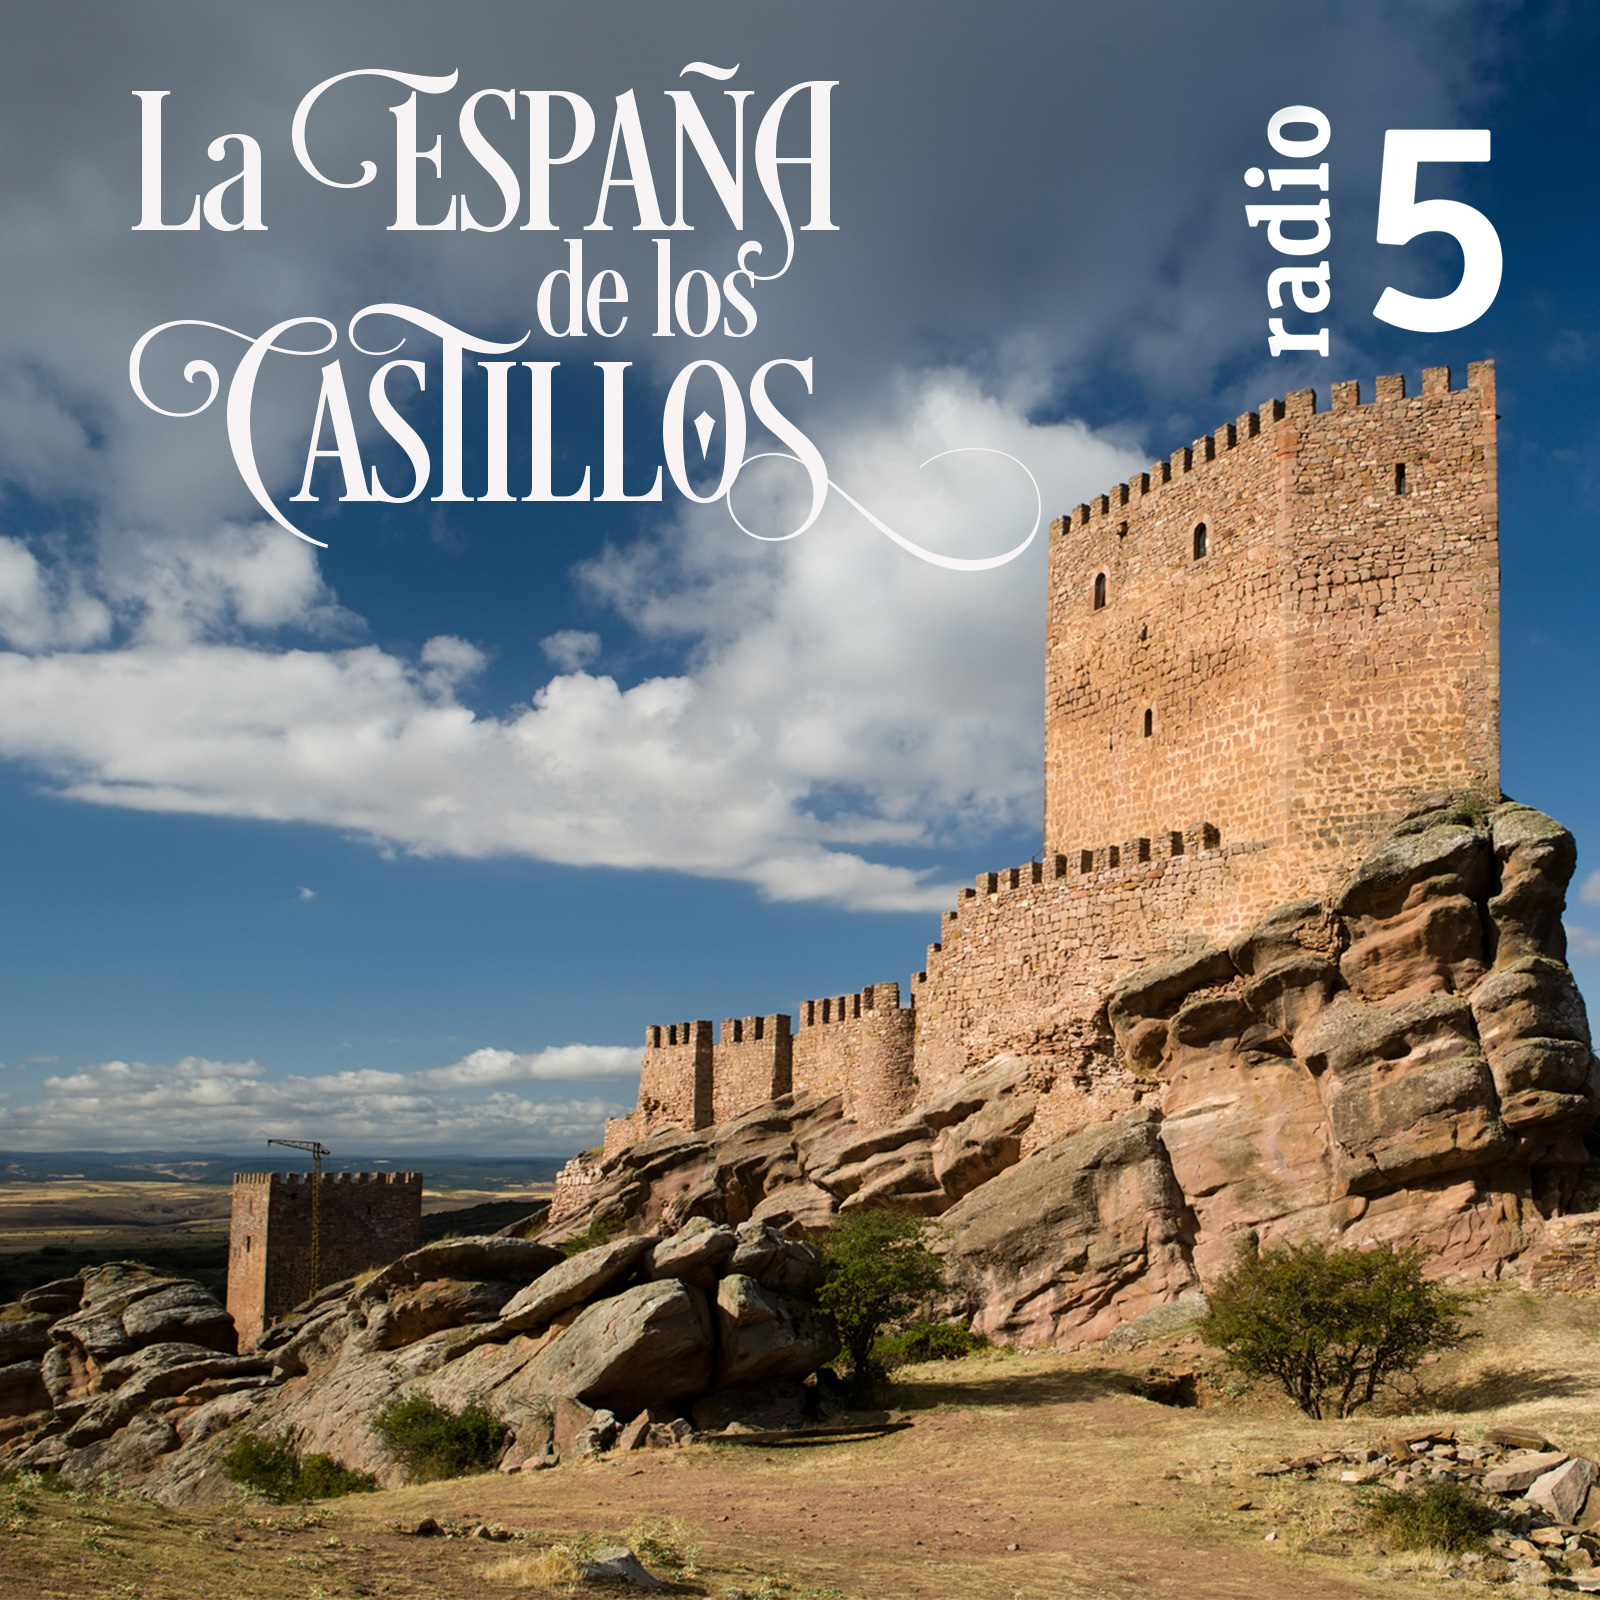 La España de los castillos - Castillo de Benissili - 12/10/19